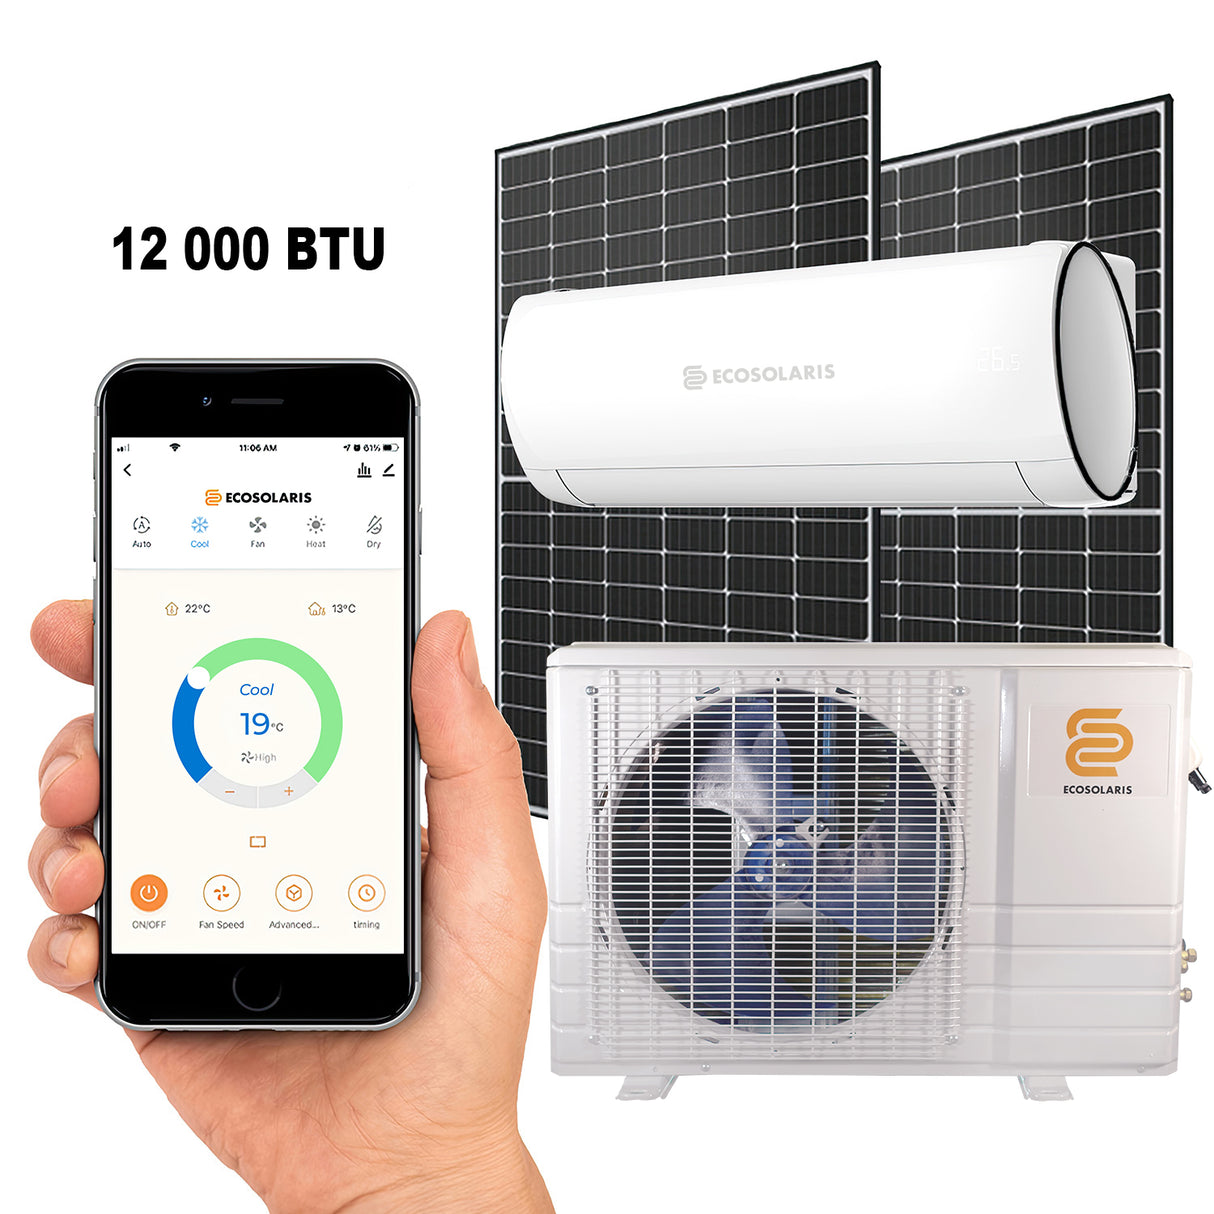 Ecosolaris 12 000 BTU solar ac air conditioner heat pump